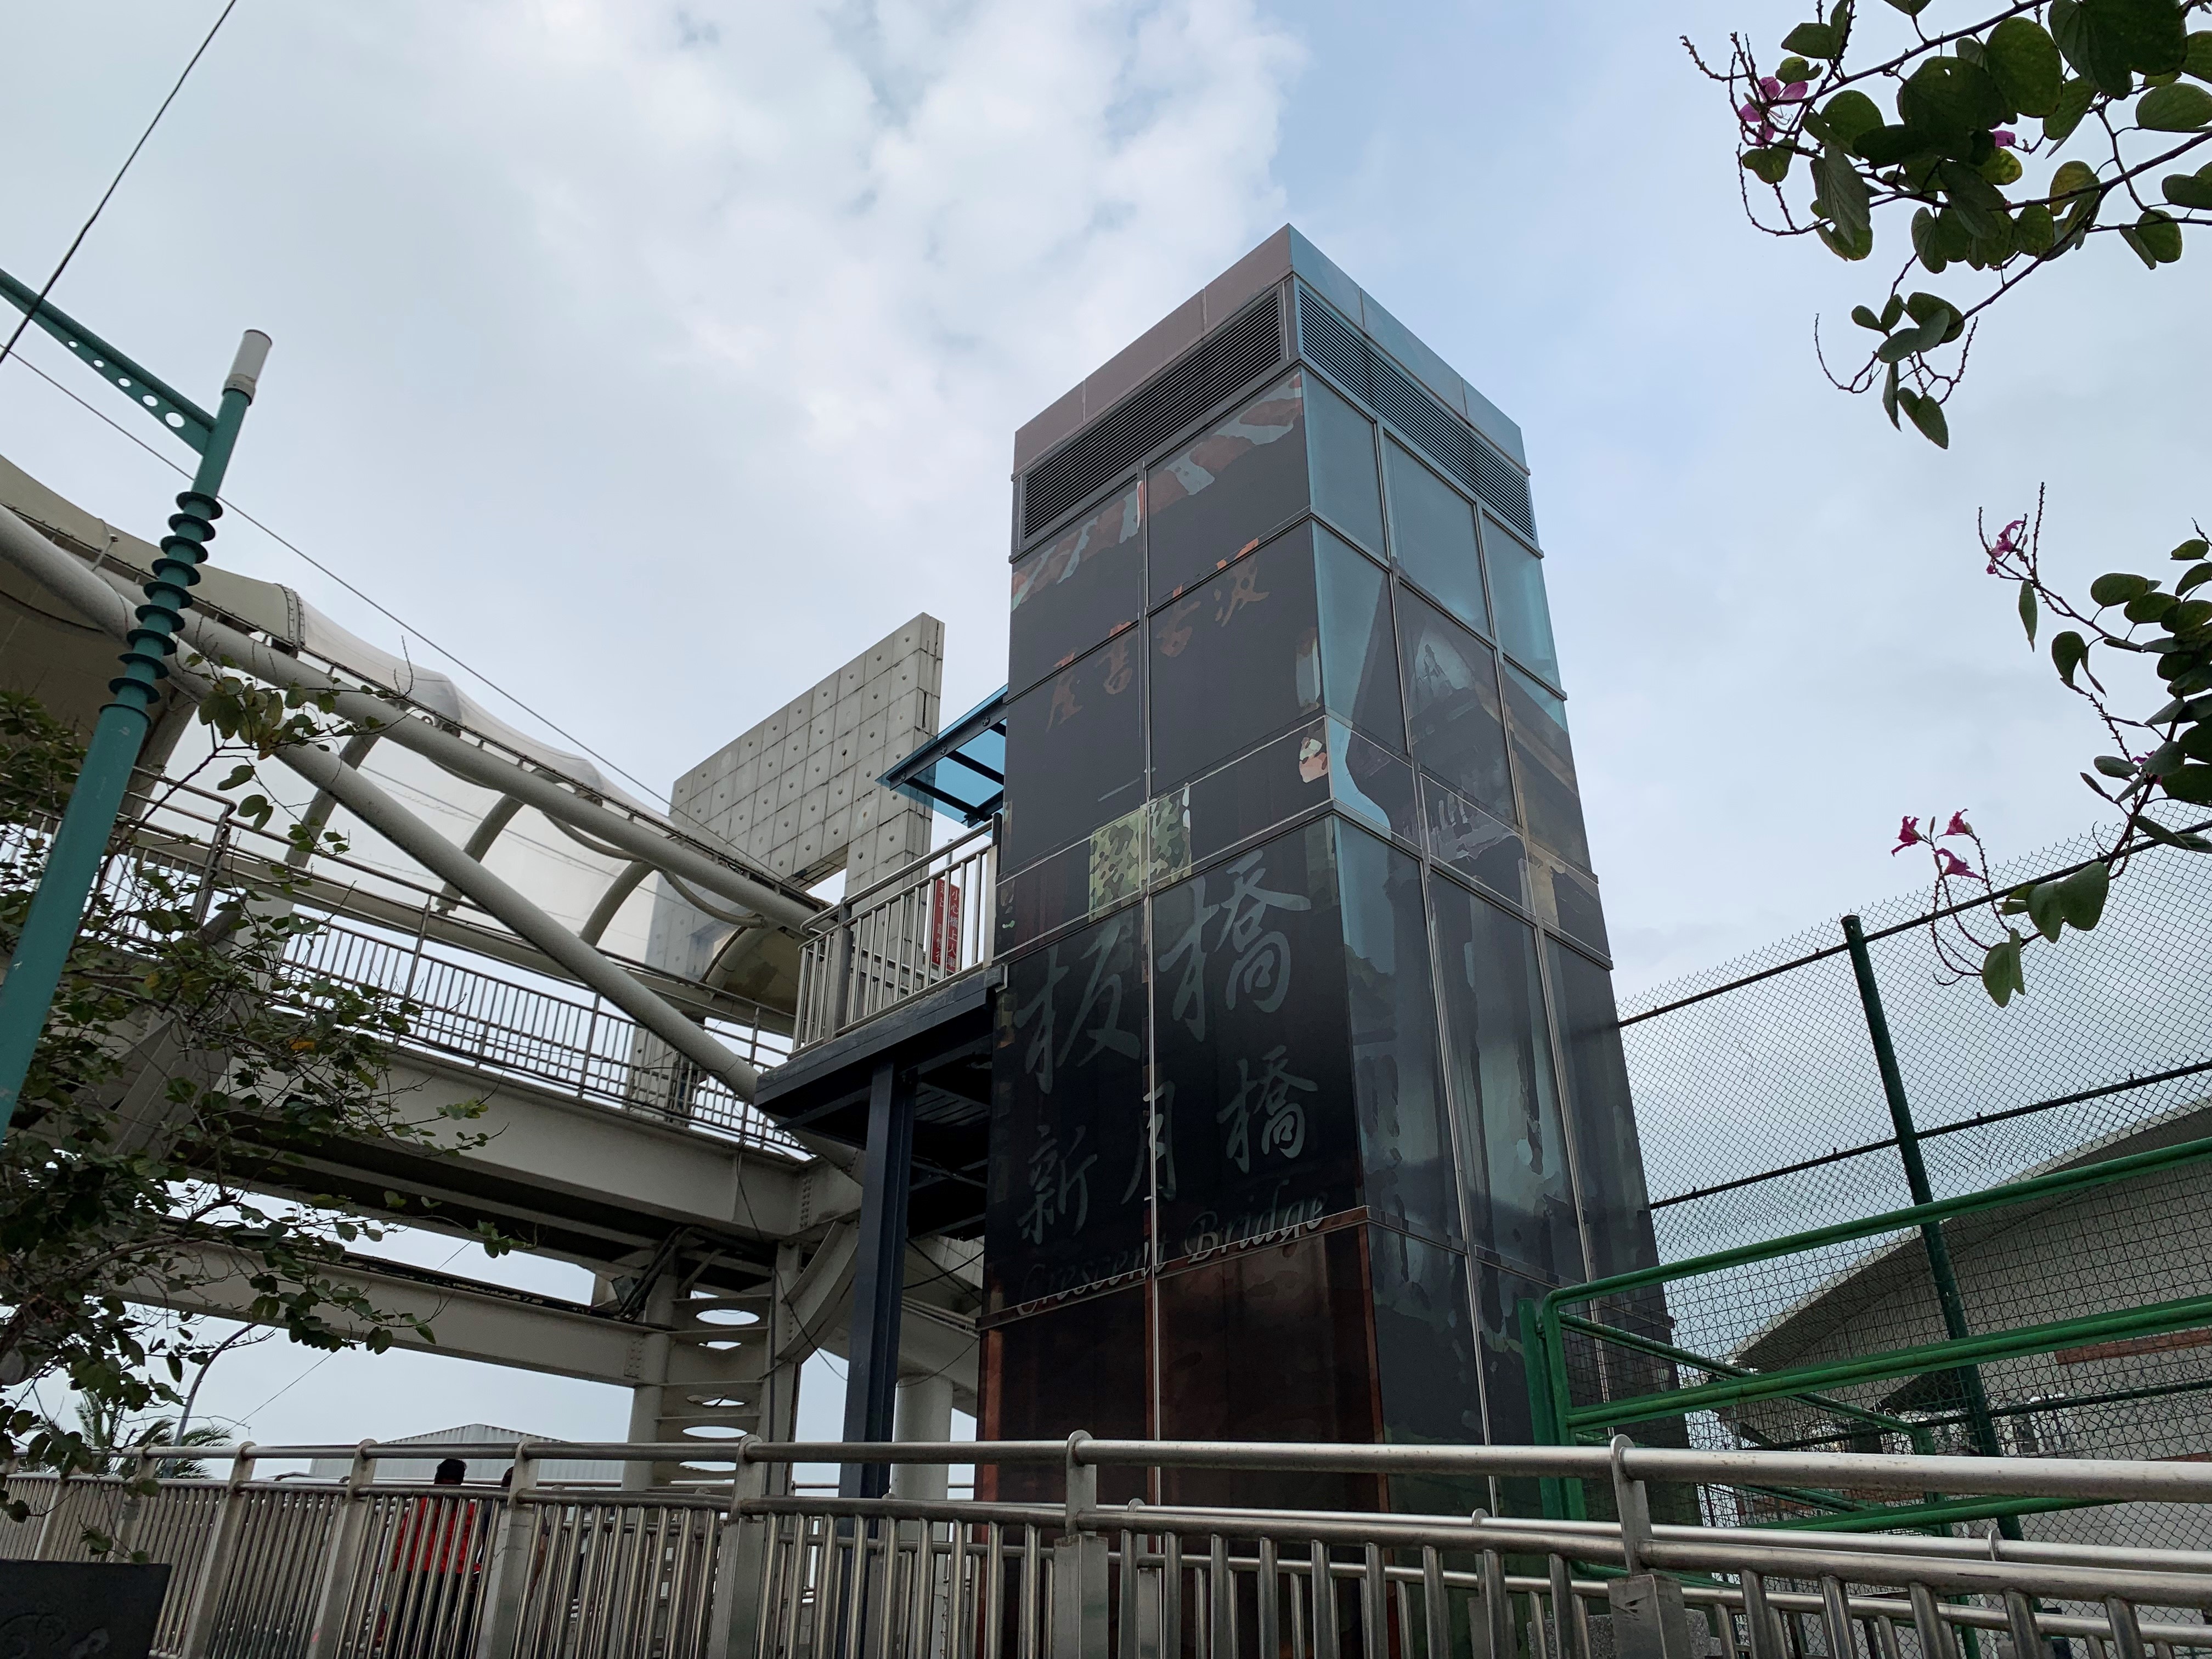 新北市政府於新月橋新莊及板橋端各興建一部水岸電梯